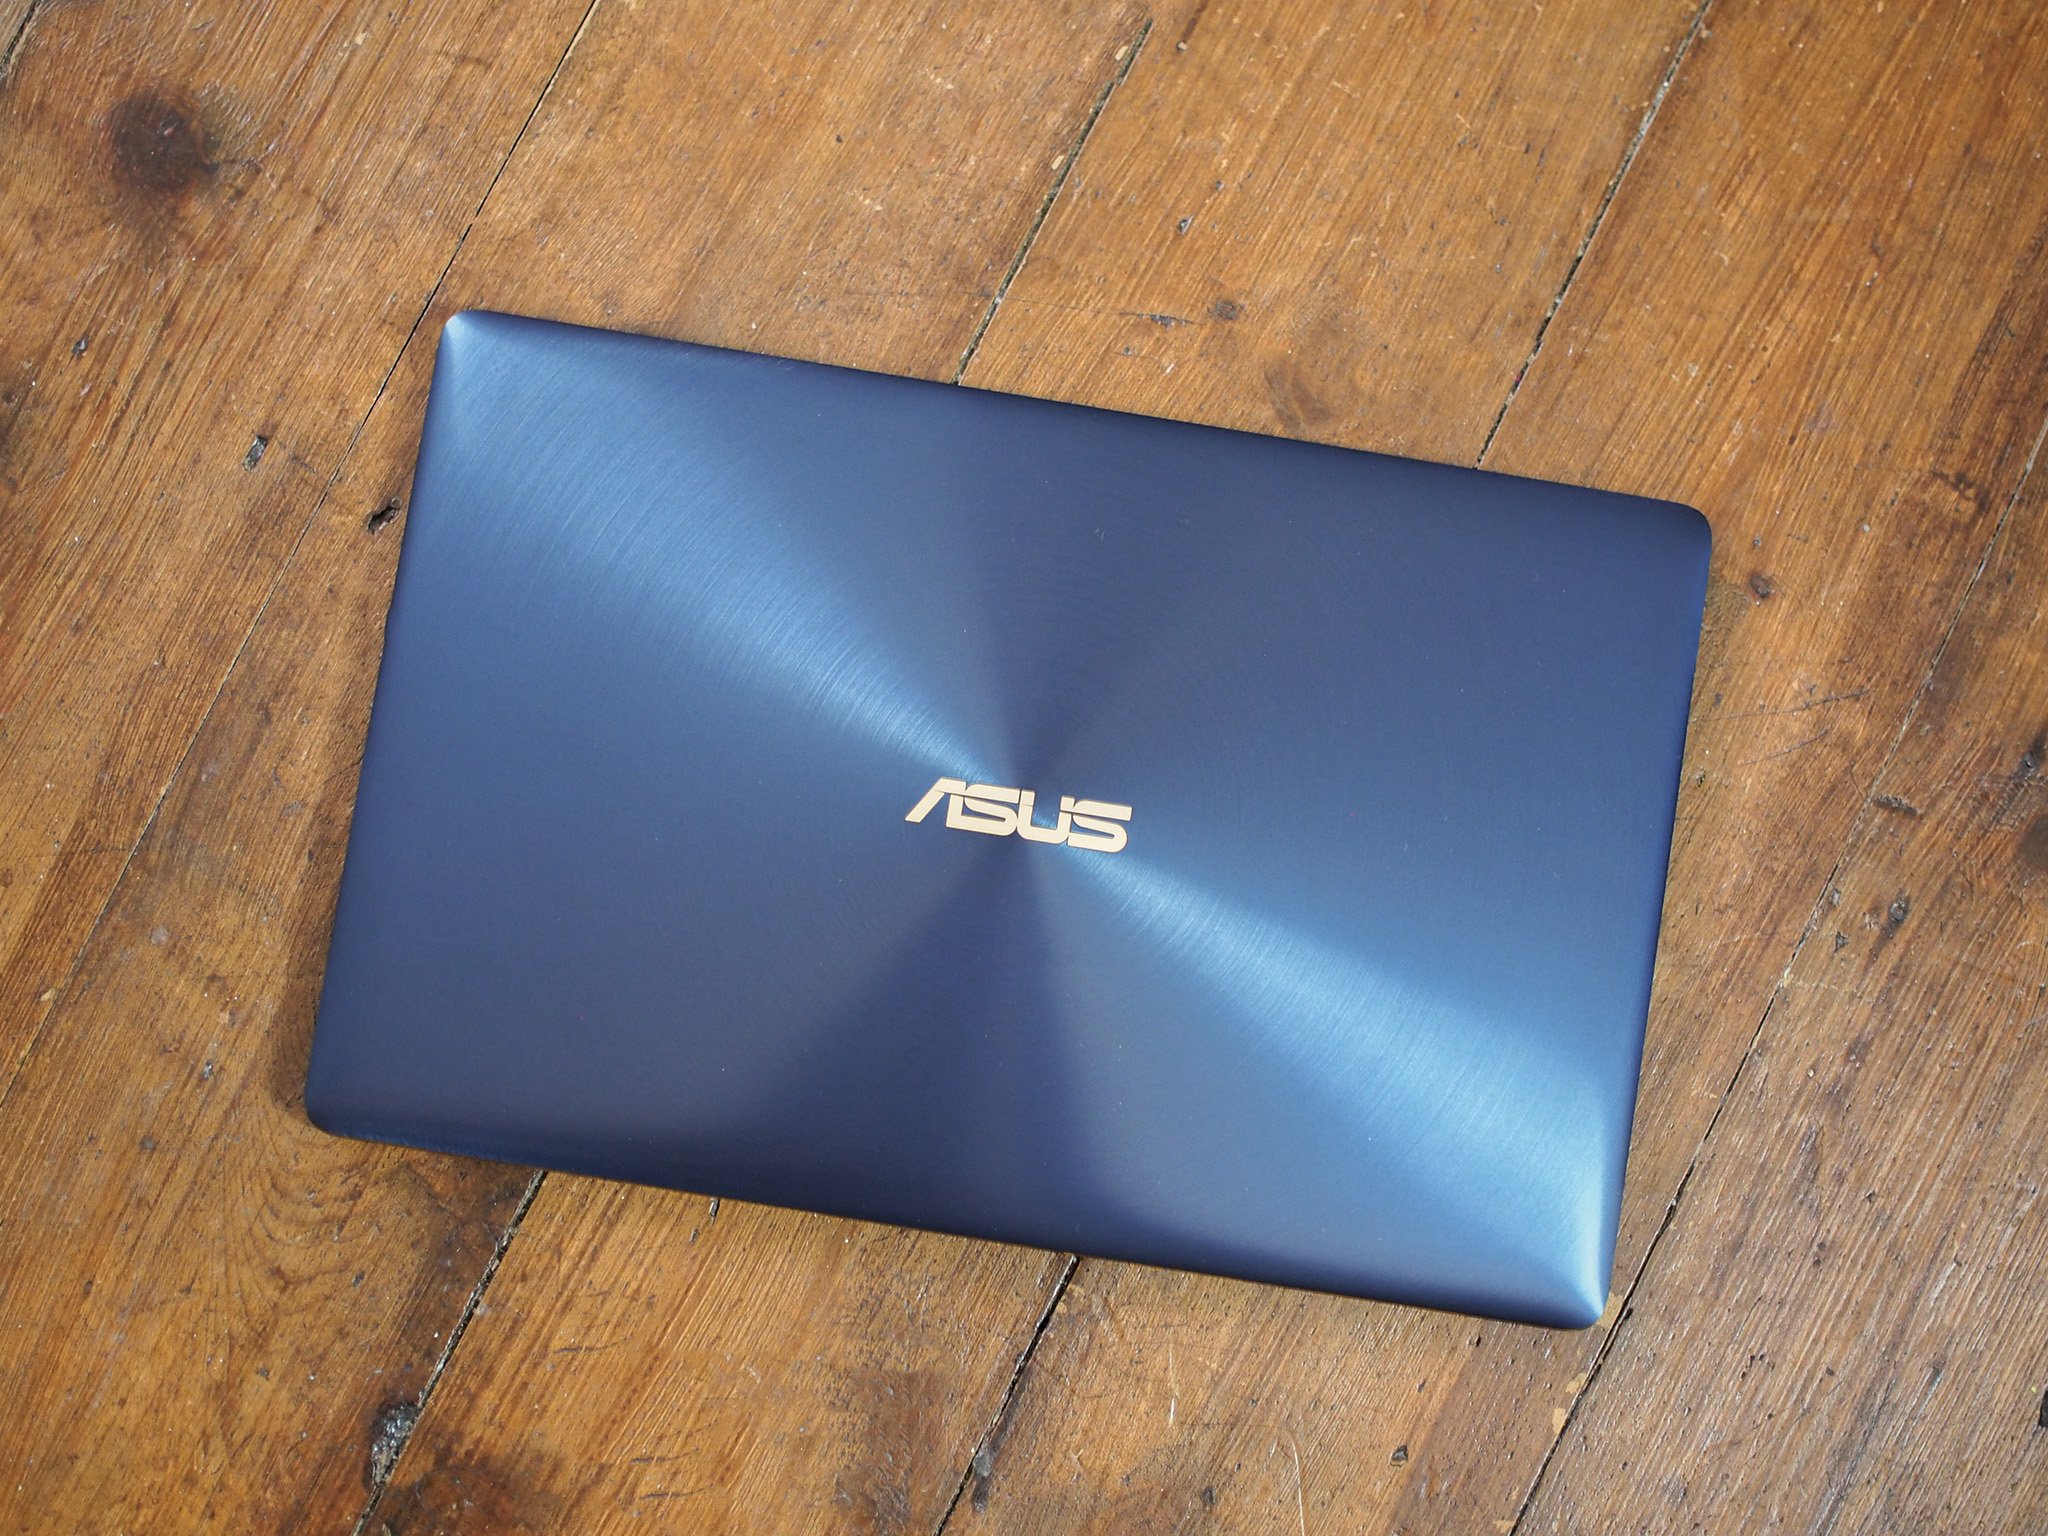 Asus zenbook аккумулятор. ASUS ZENBOOK 3. Ноутбук ASUS ZENBOOK голубой металлик. Подставка для ноутбука асус зенбук 14. Корпус ноутбука ASUS ZENBOOK синий.